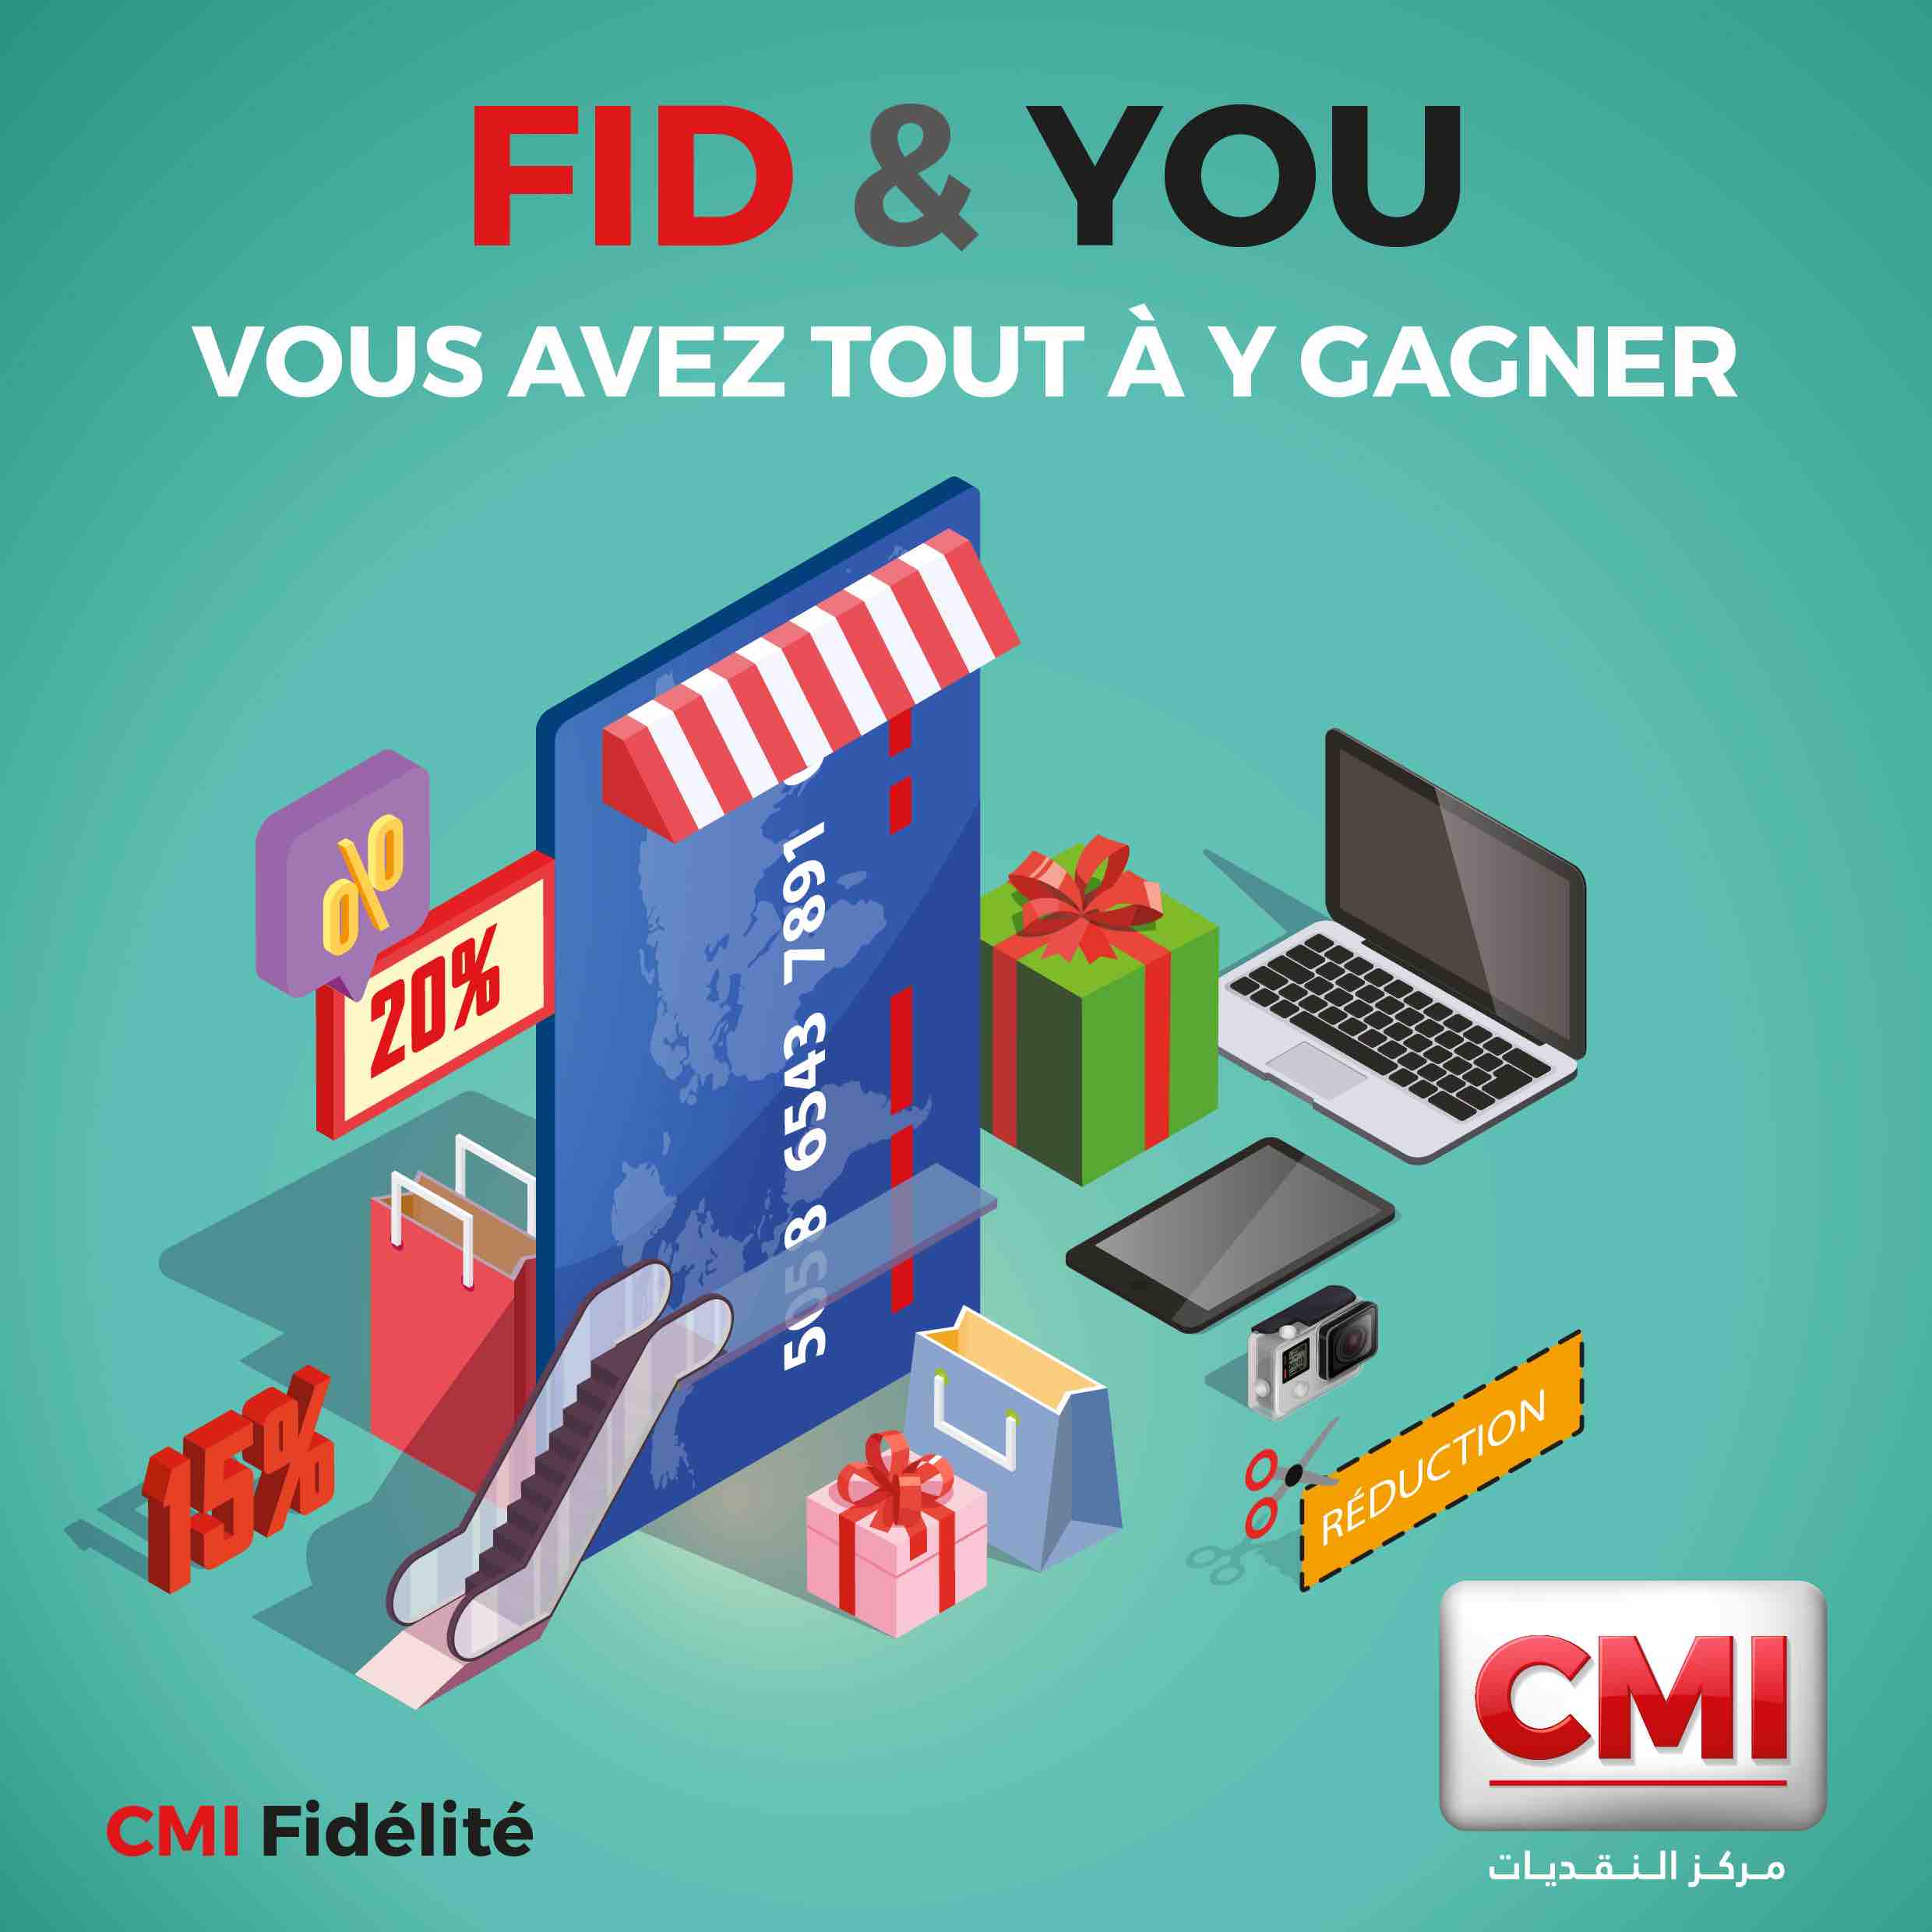 Le CMI fidélise les clients détenteurs de cartes bancaires marocaines